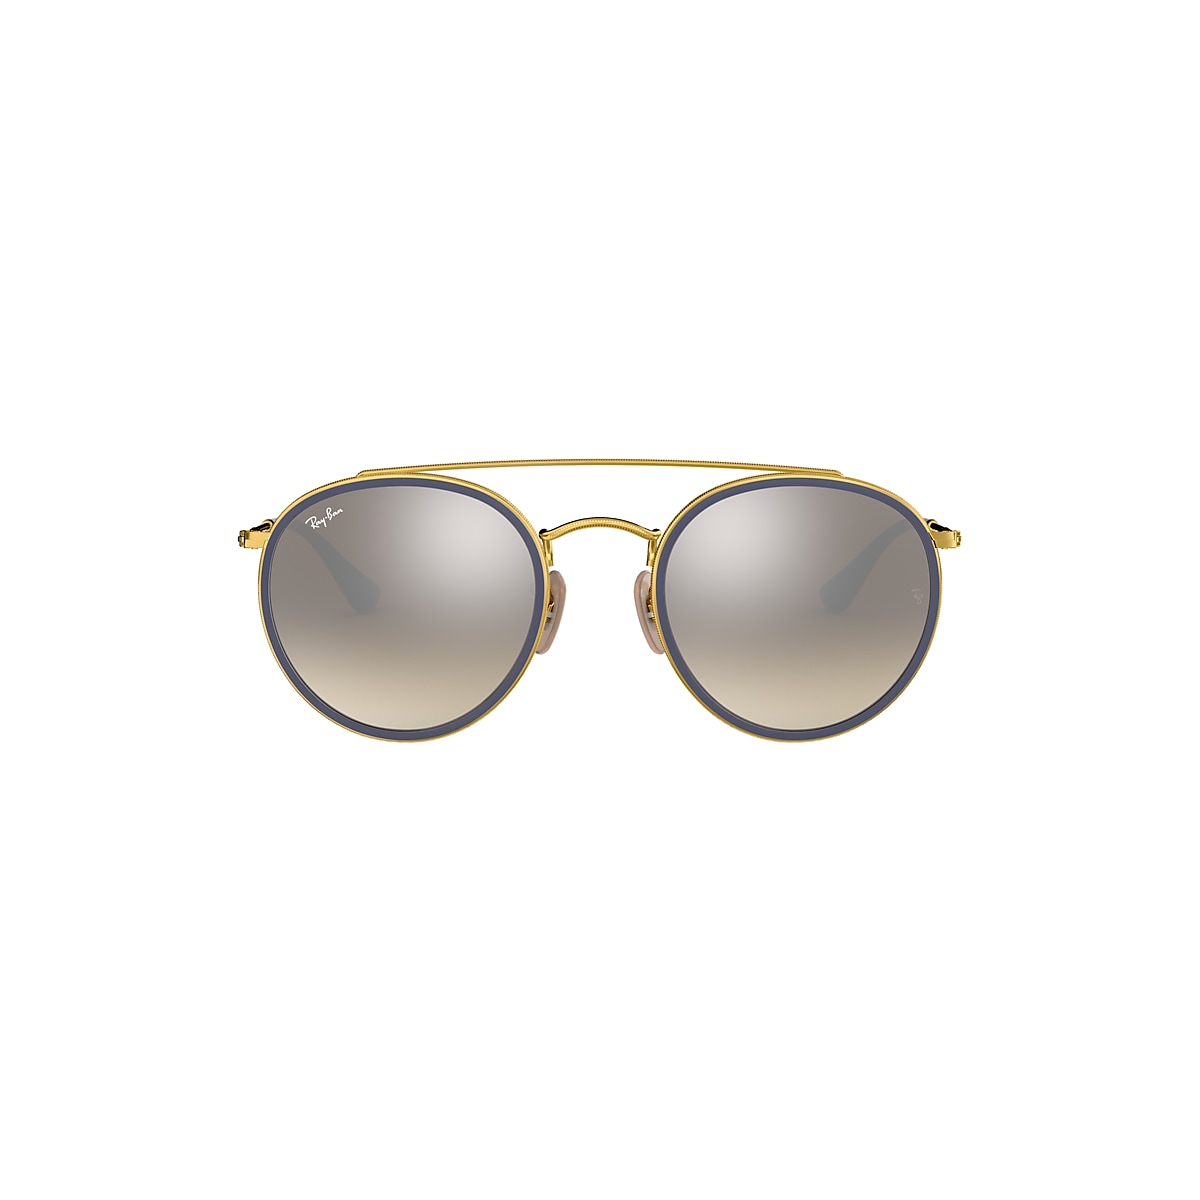 Seizoen Zuiver Cordelia Round Double Bridge Sunglasses in Gold and Silver | Ray-Ban®